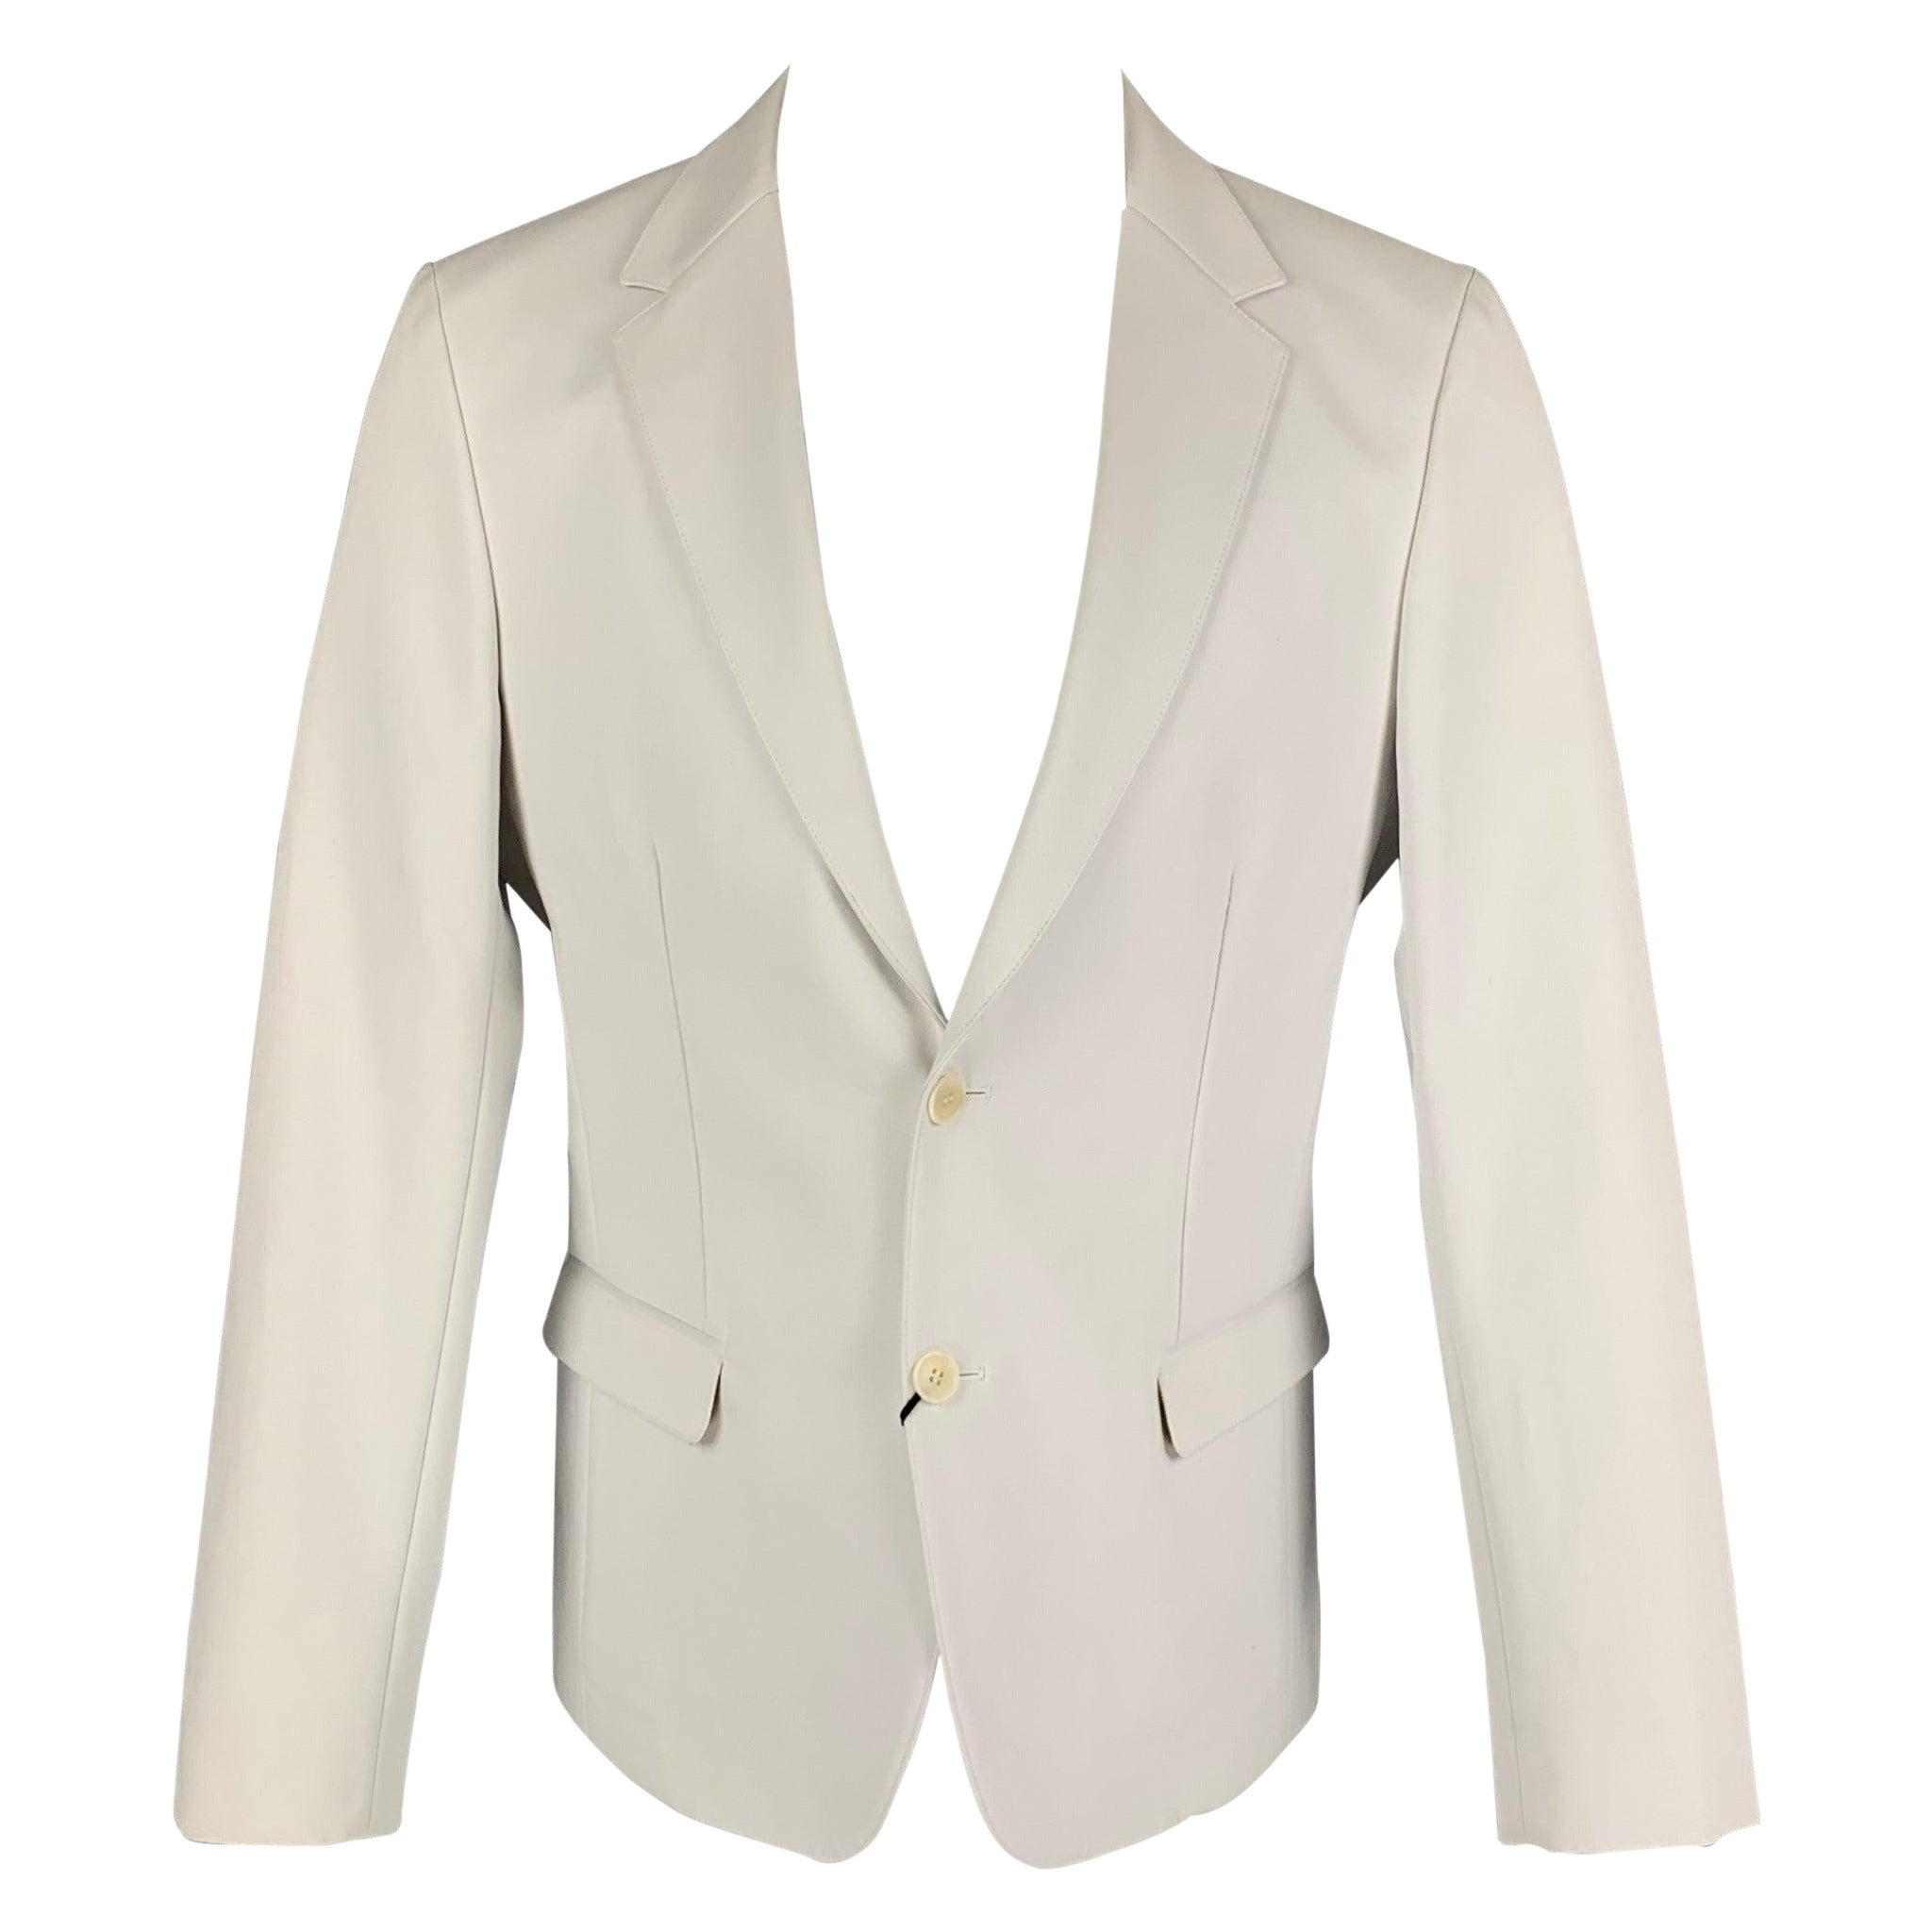 CALVIN KLEIN COLLECTION Size 40 Off White Cotton Notch Lapel Suit For Sale